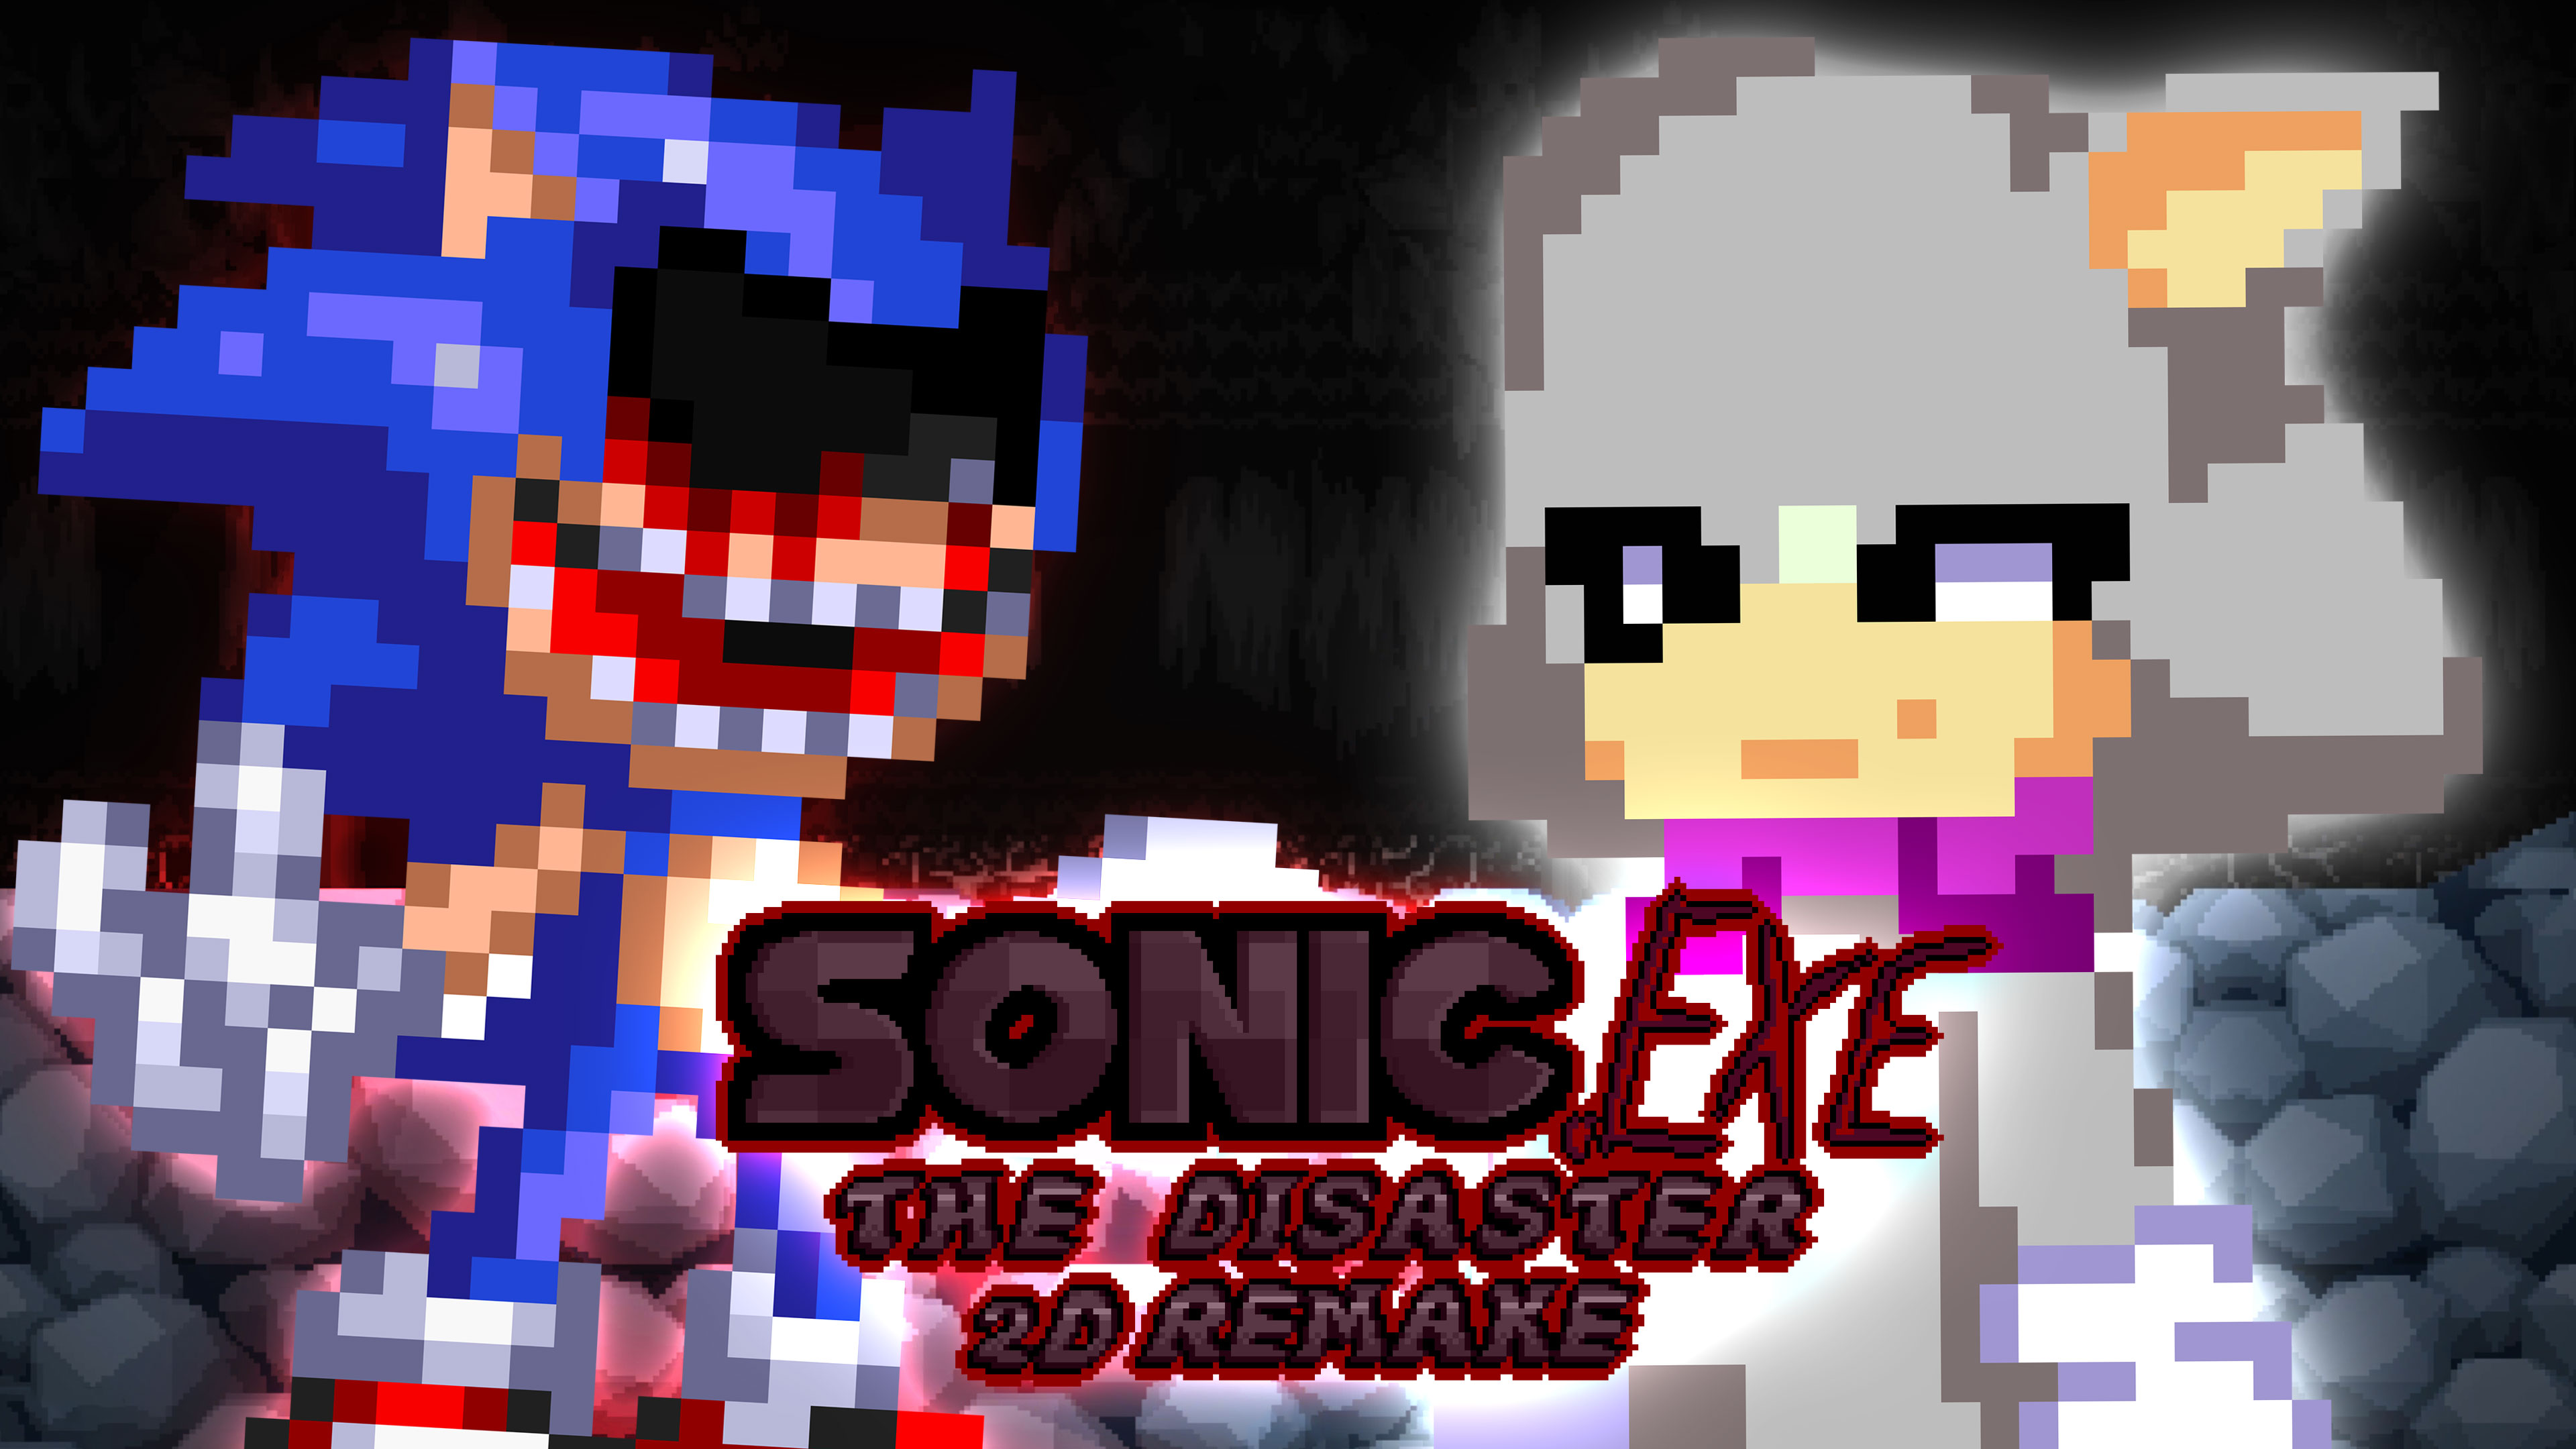 Sonic exe disaster на андроиде. Sonic exe the Disaster. Sonic exe the Disaster 2d. Sonic.exe the Disaster 2d Remake.